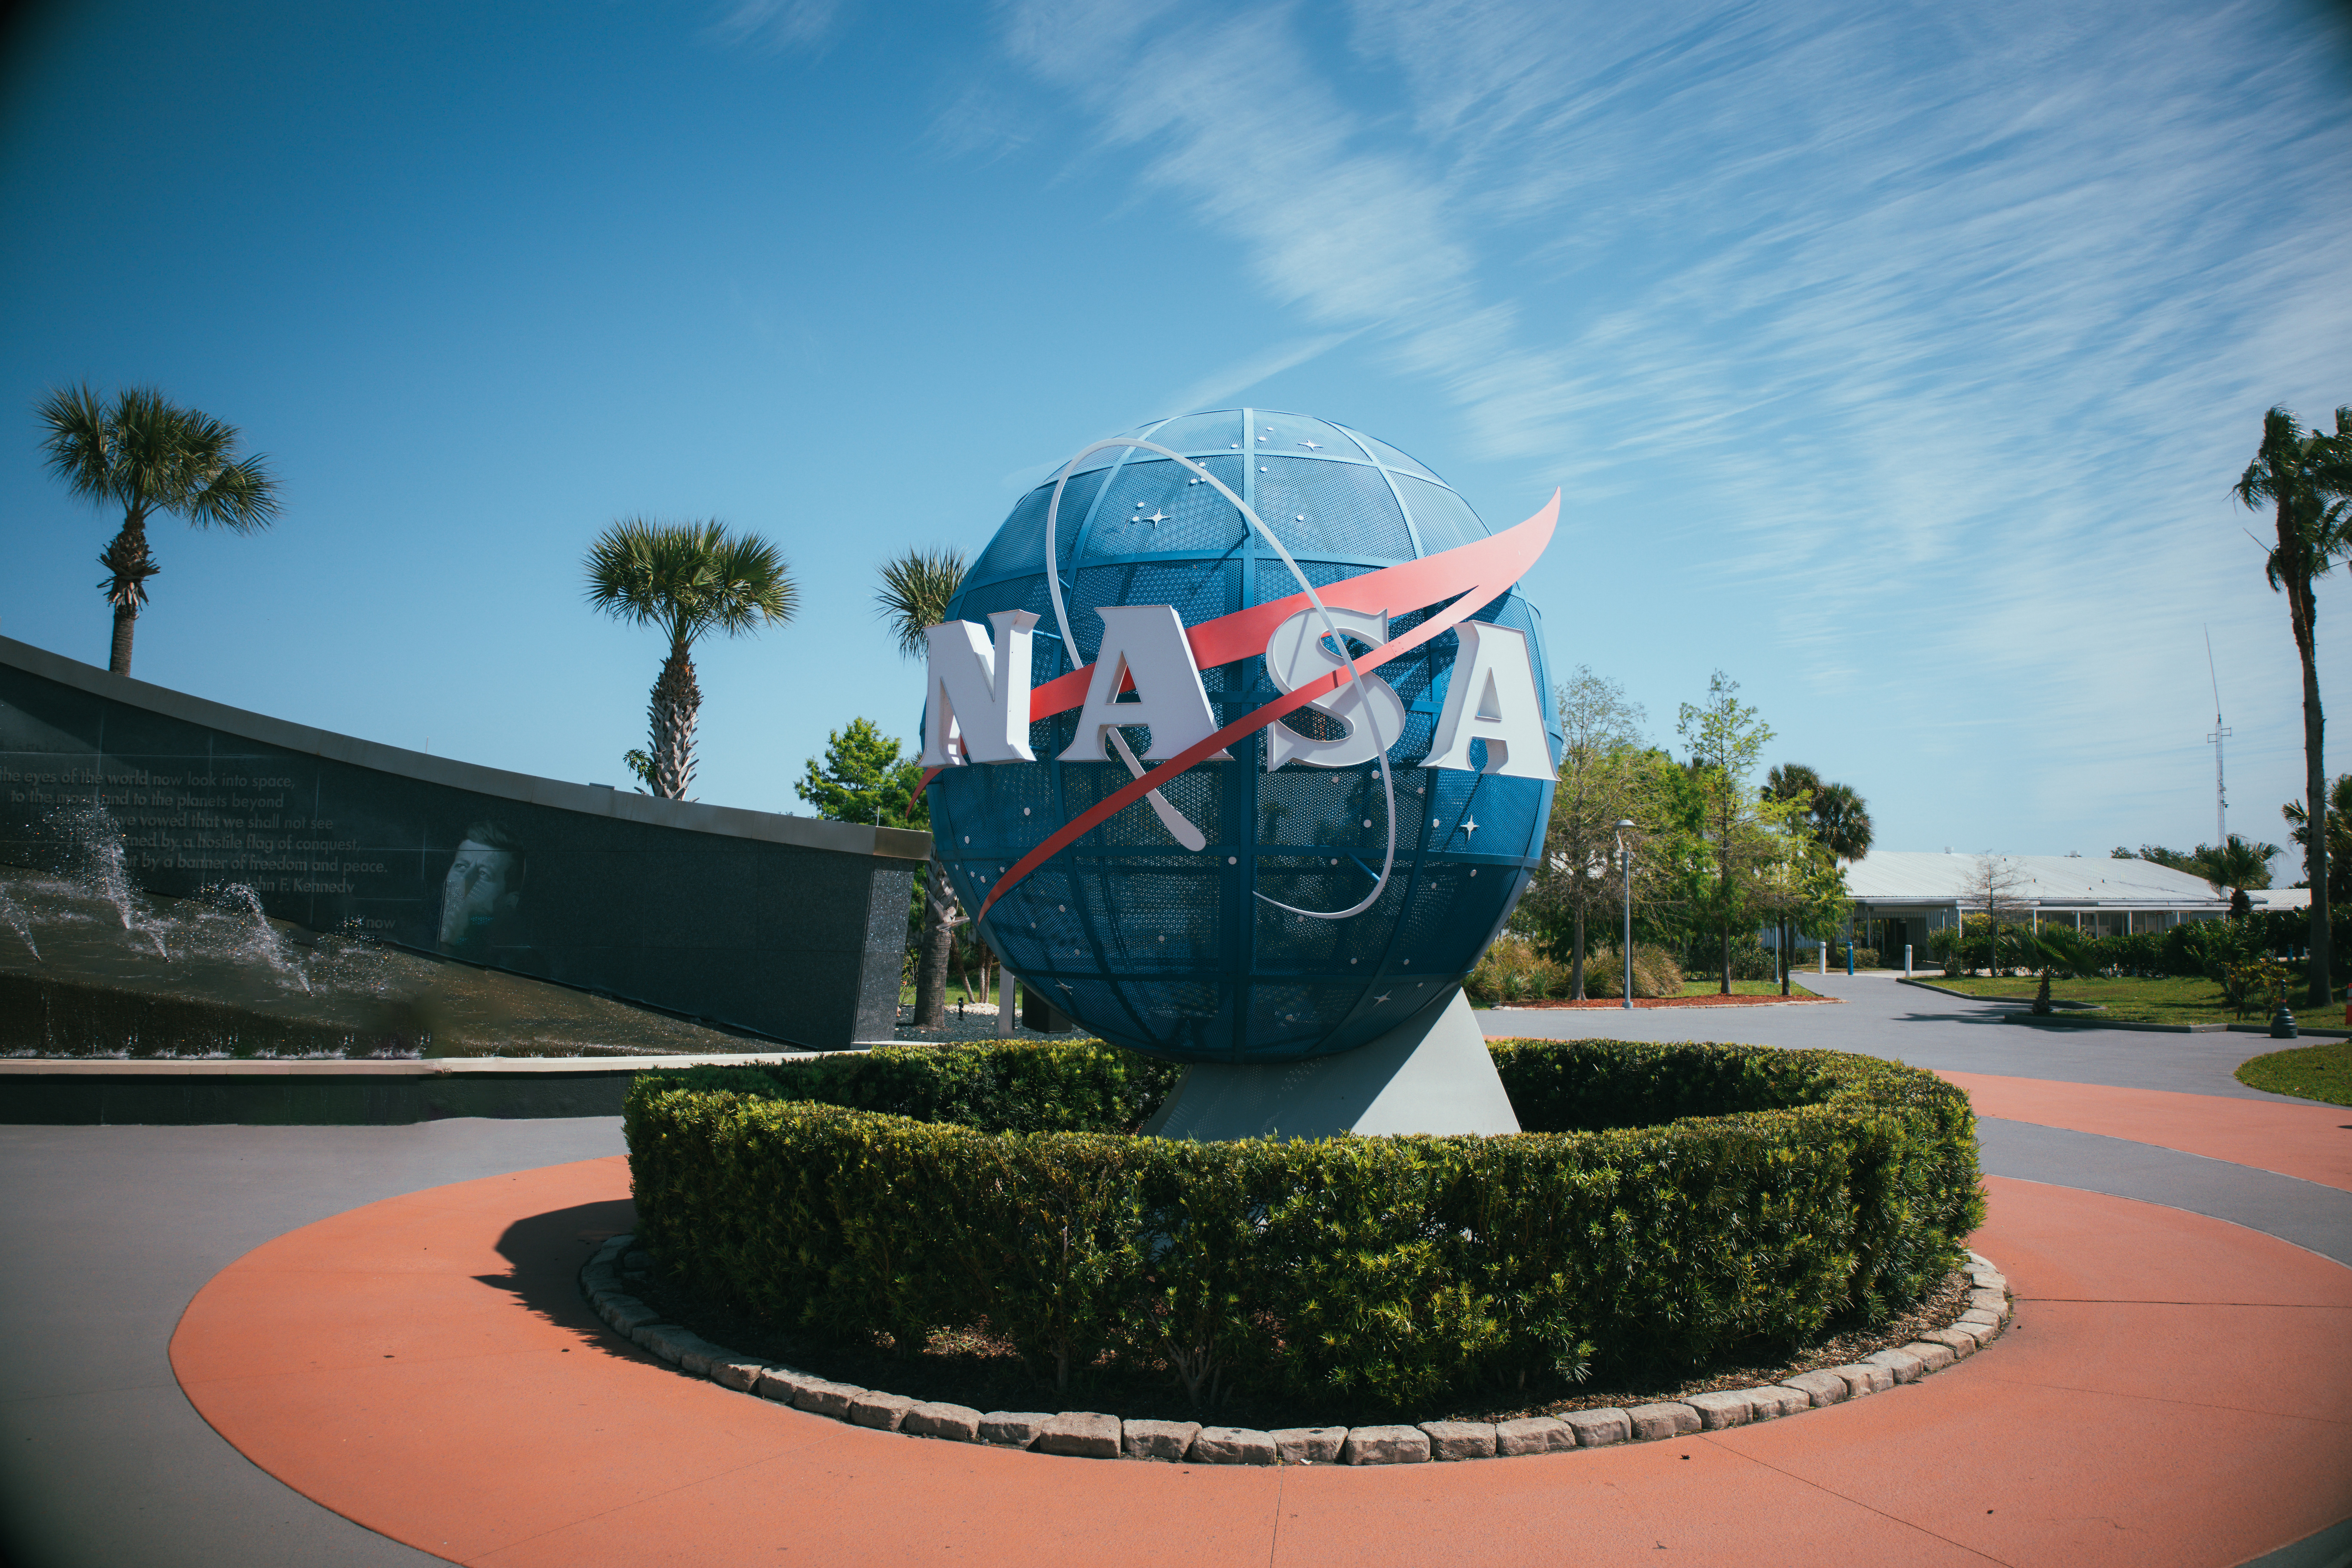 NASA Space center Florida